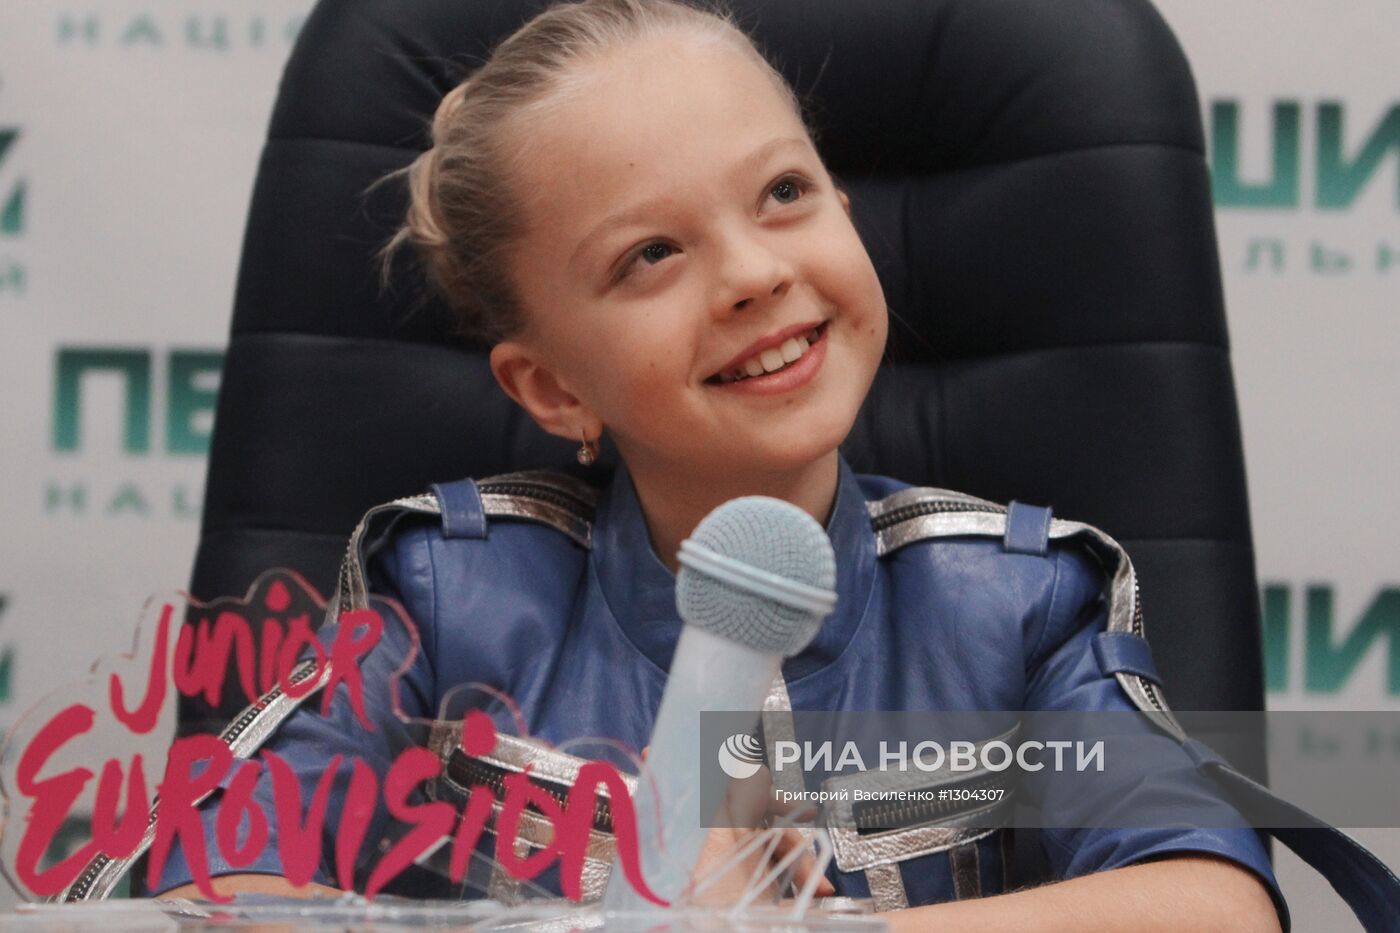 Победитель конкурса "Детское Евровидение-2012" Анастасия Петрик